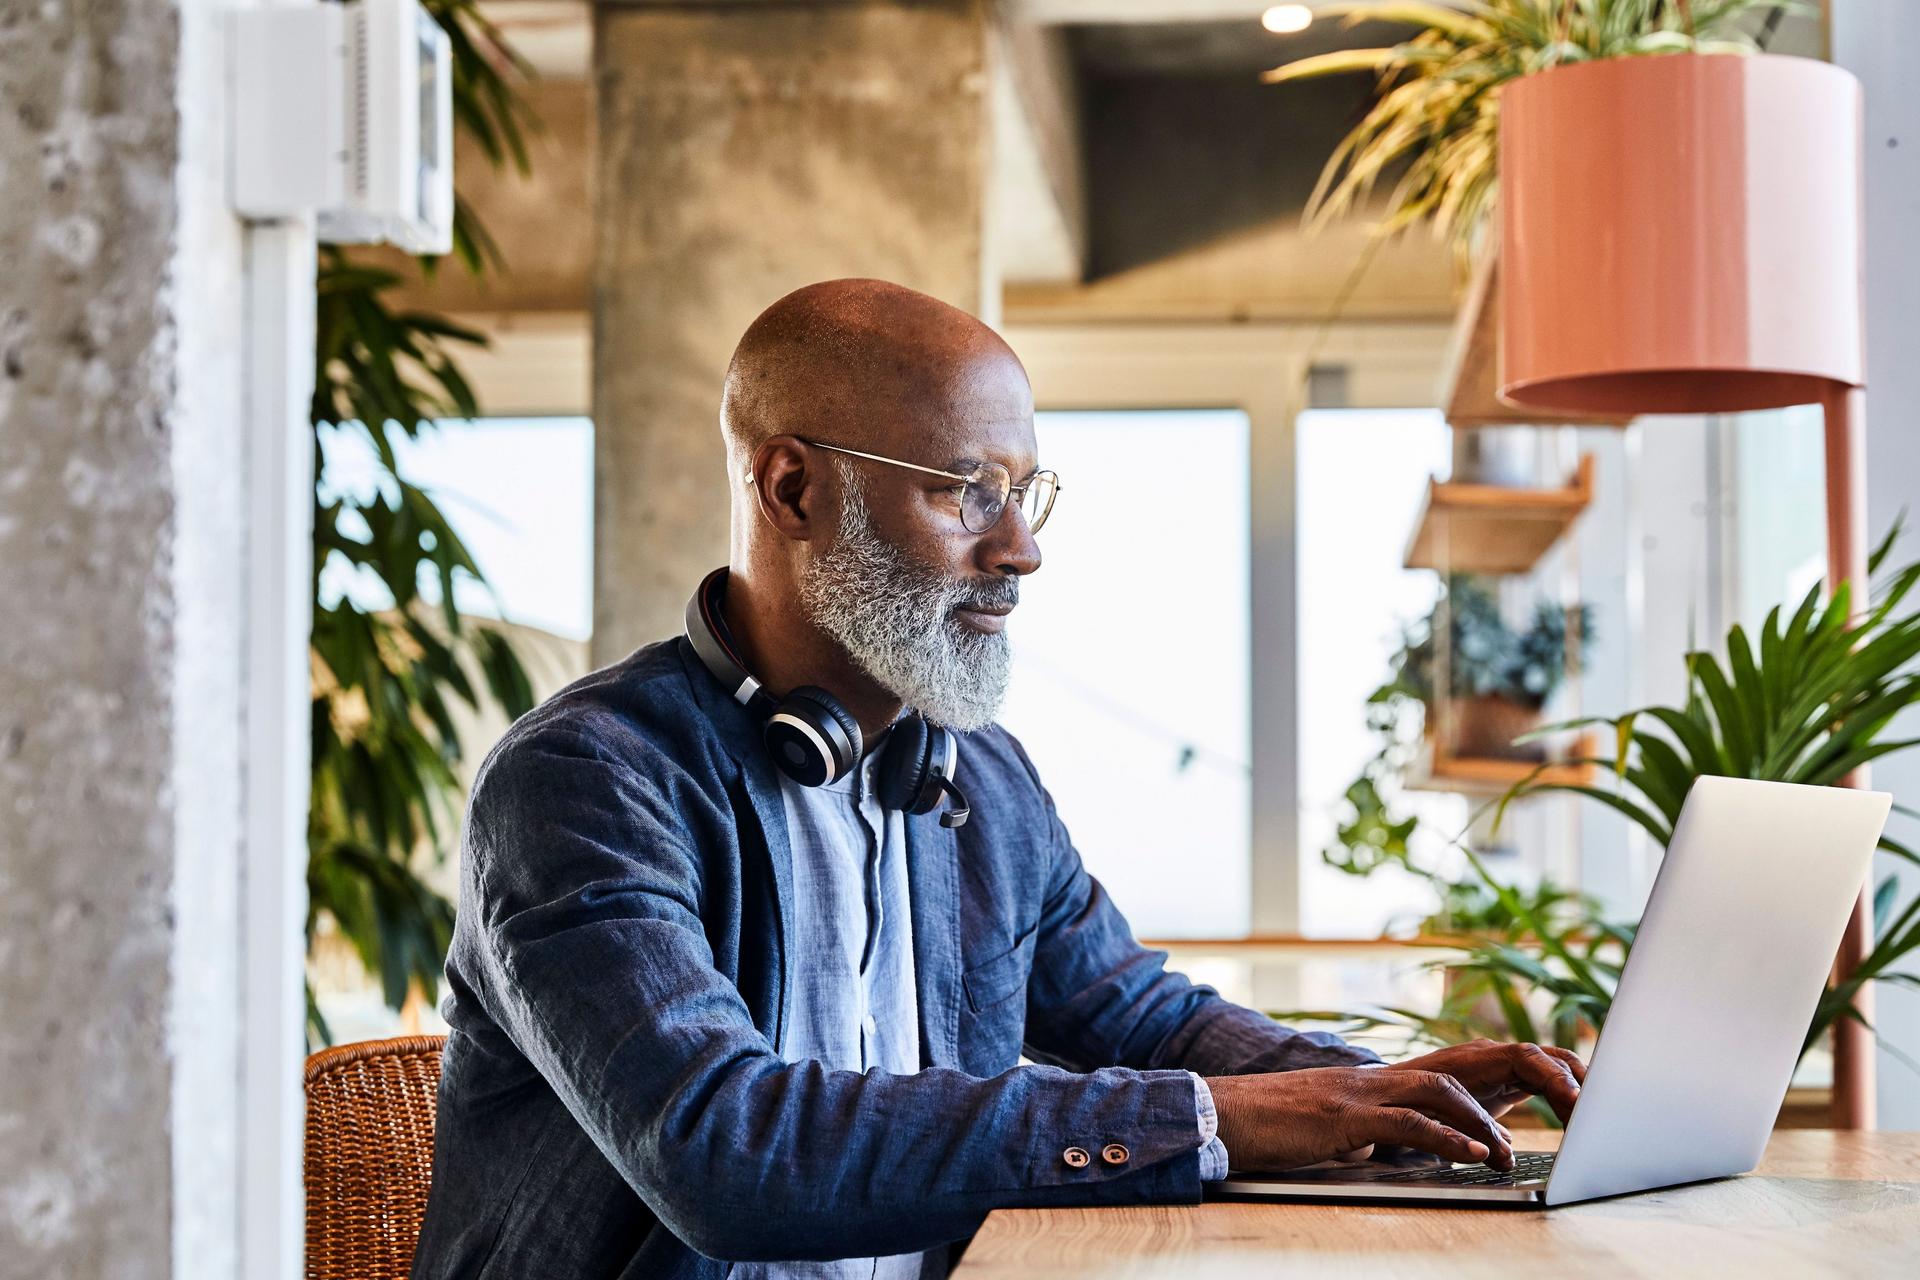 Mann mittleren Alters, der an einem Holztisch sitzt und an einem Laptop arbeitet. Im Hintergrund sind viele Pflanzen.